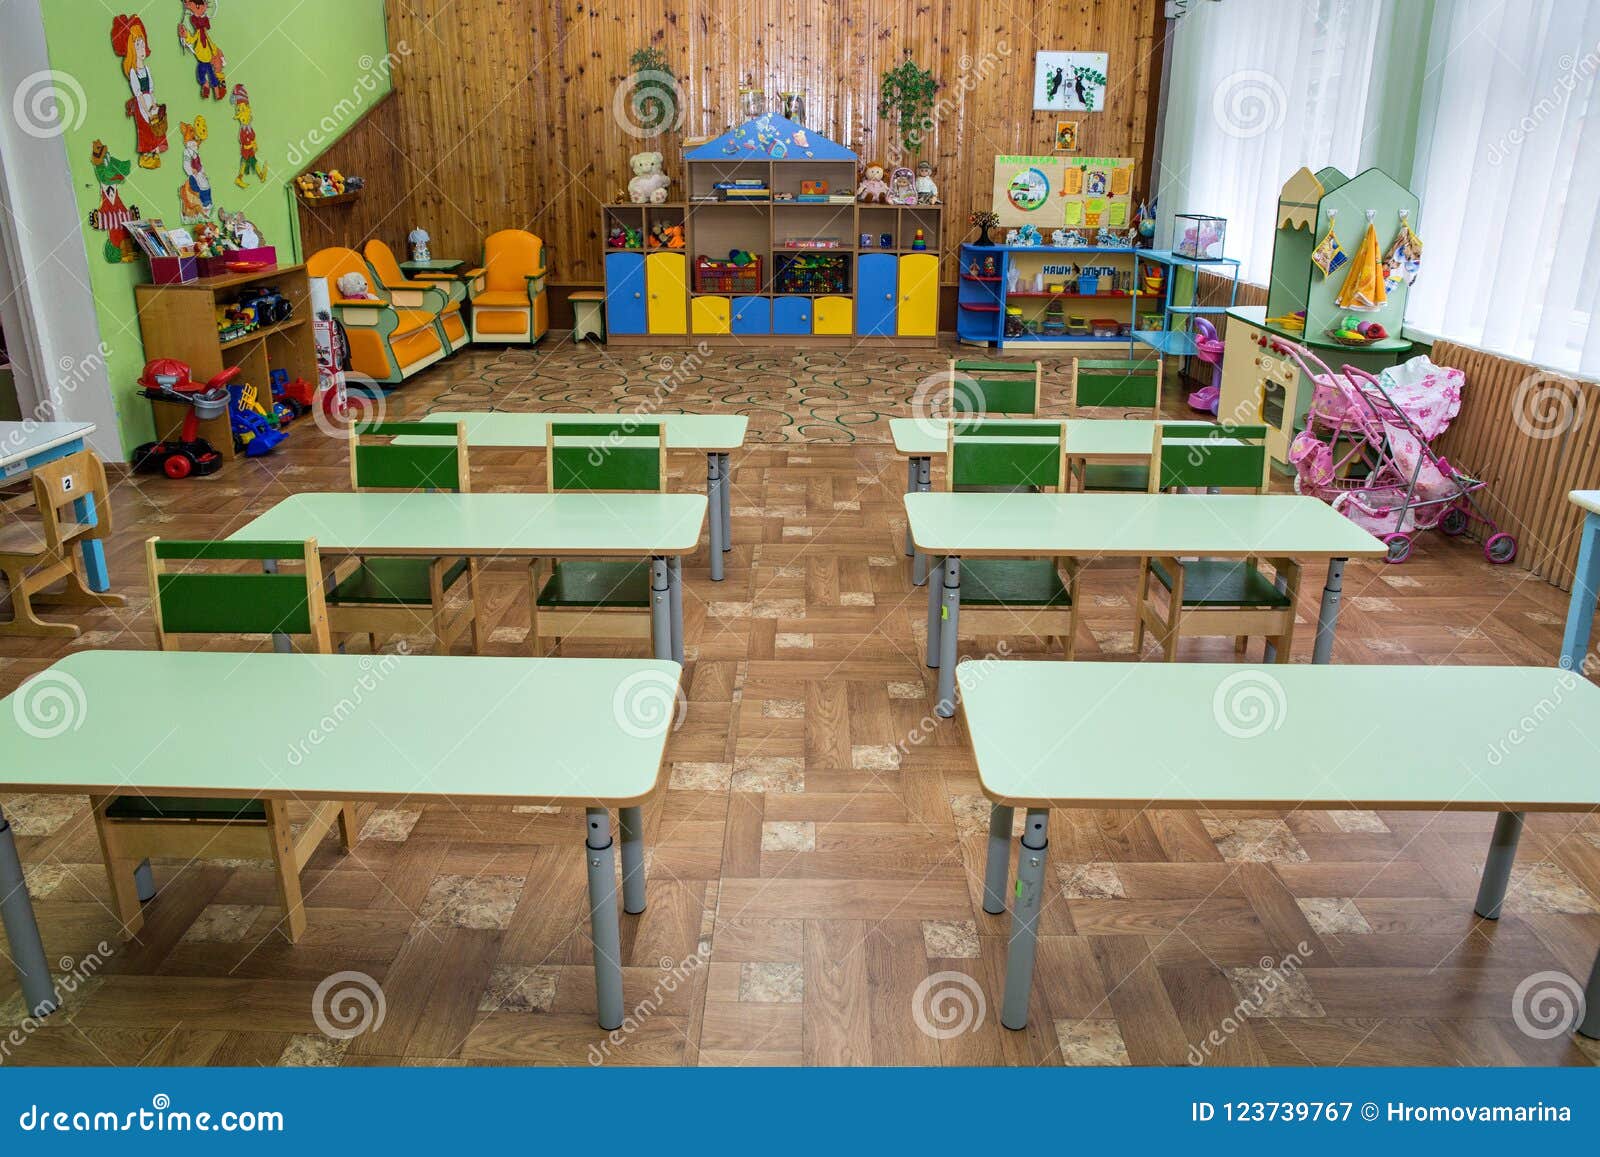 Class Kindergarten Rural School Playschool And Green Desks